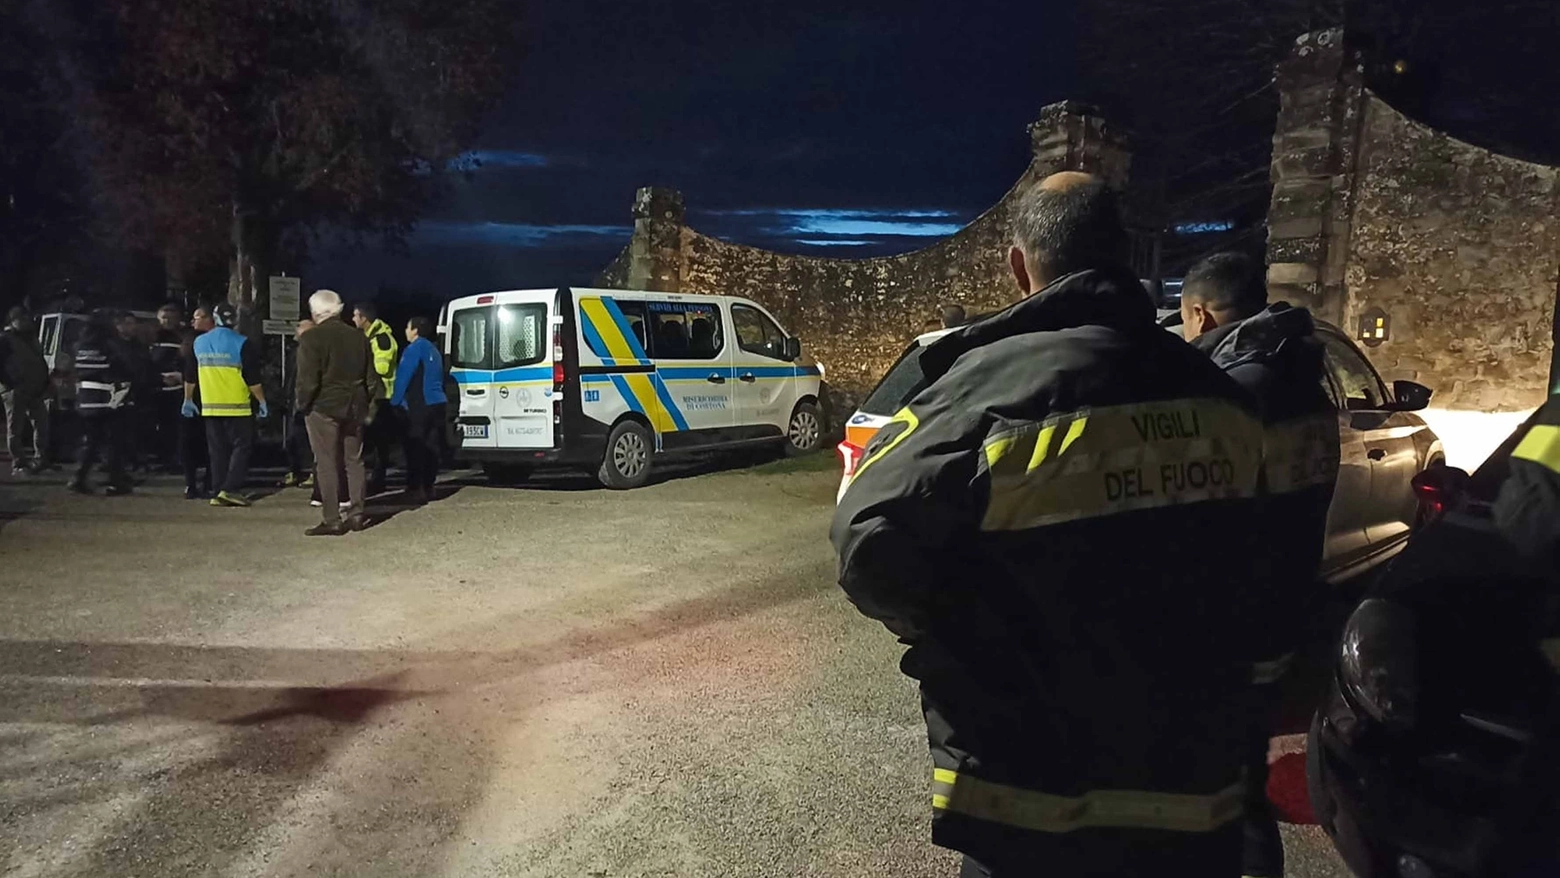 L'intervento dei soccorritori dopo l'intossicazione in parrocchia (Foto Falsetti)